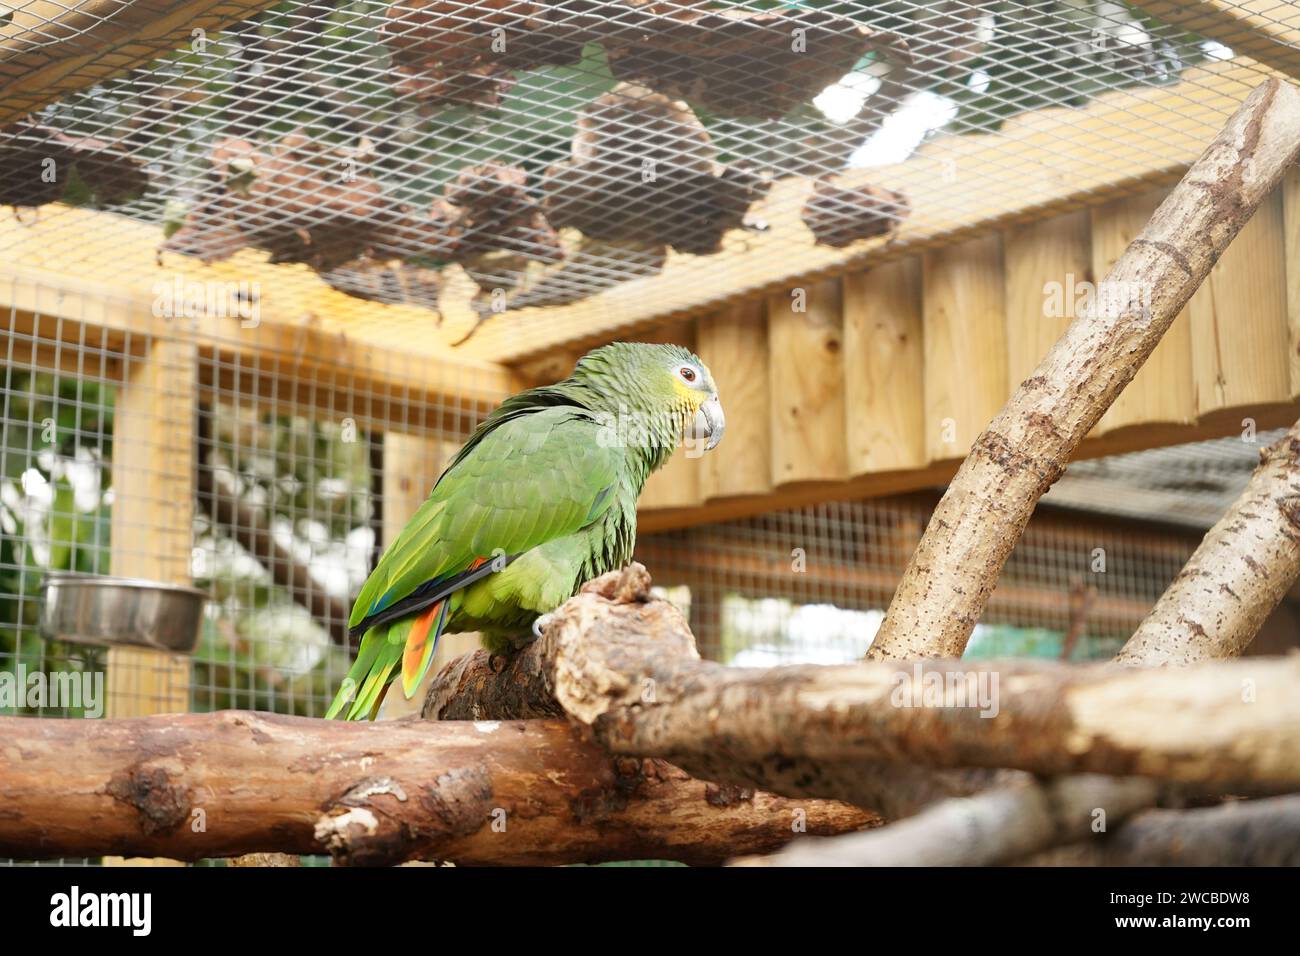 Animals at Amazonia - Un luogo dove guardiamo gli animali che si trovano nella foresta pluviale amazzonica, proprio al M&D's Theme Park in Strathclyde Park Foto Stock